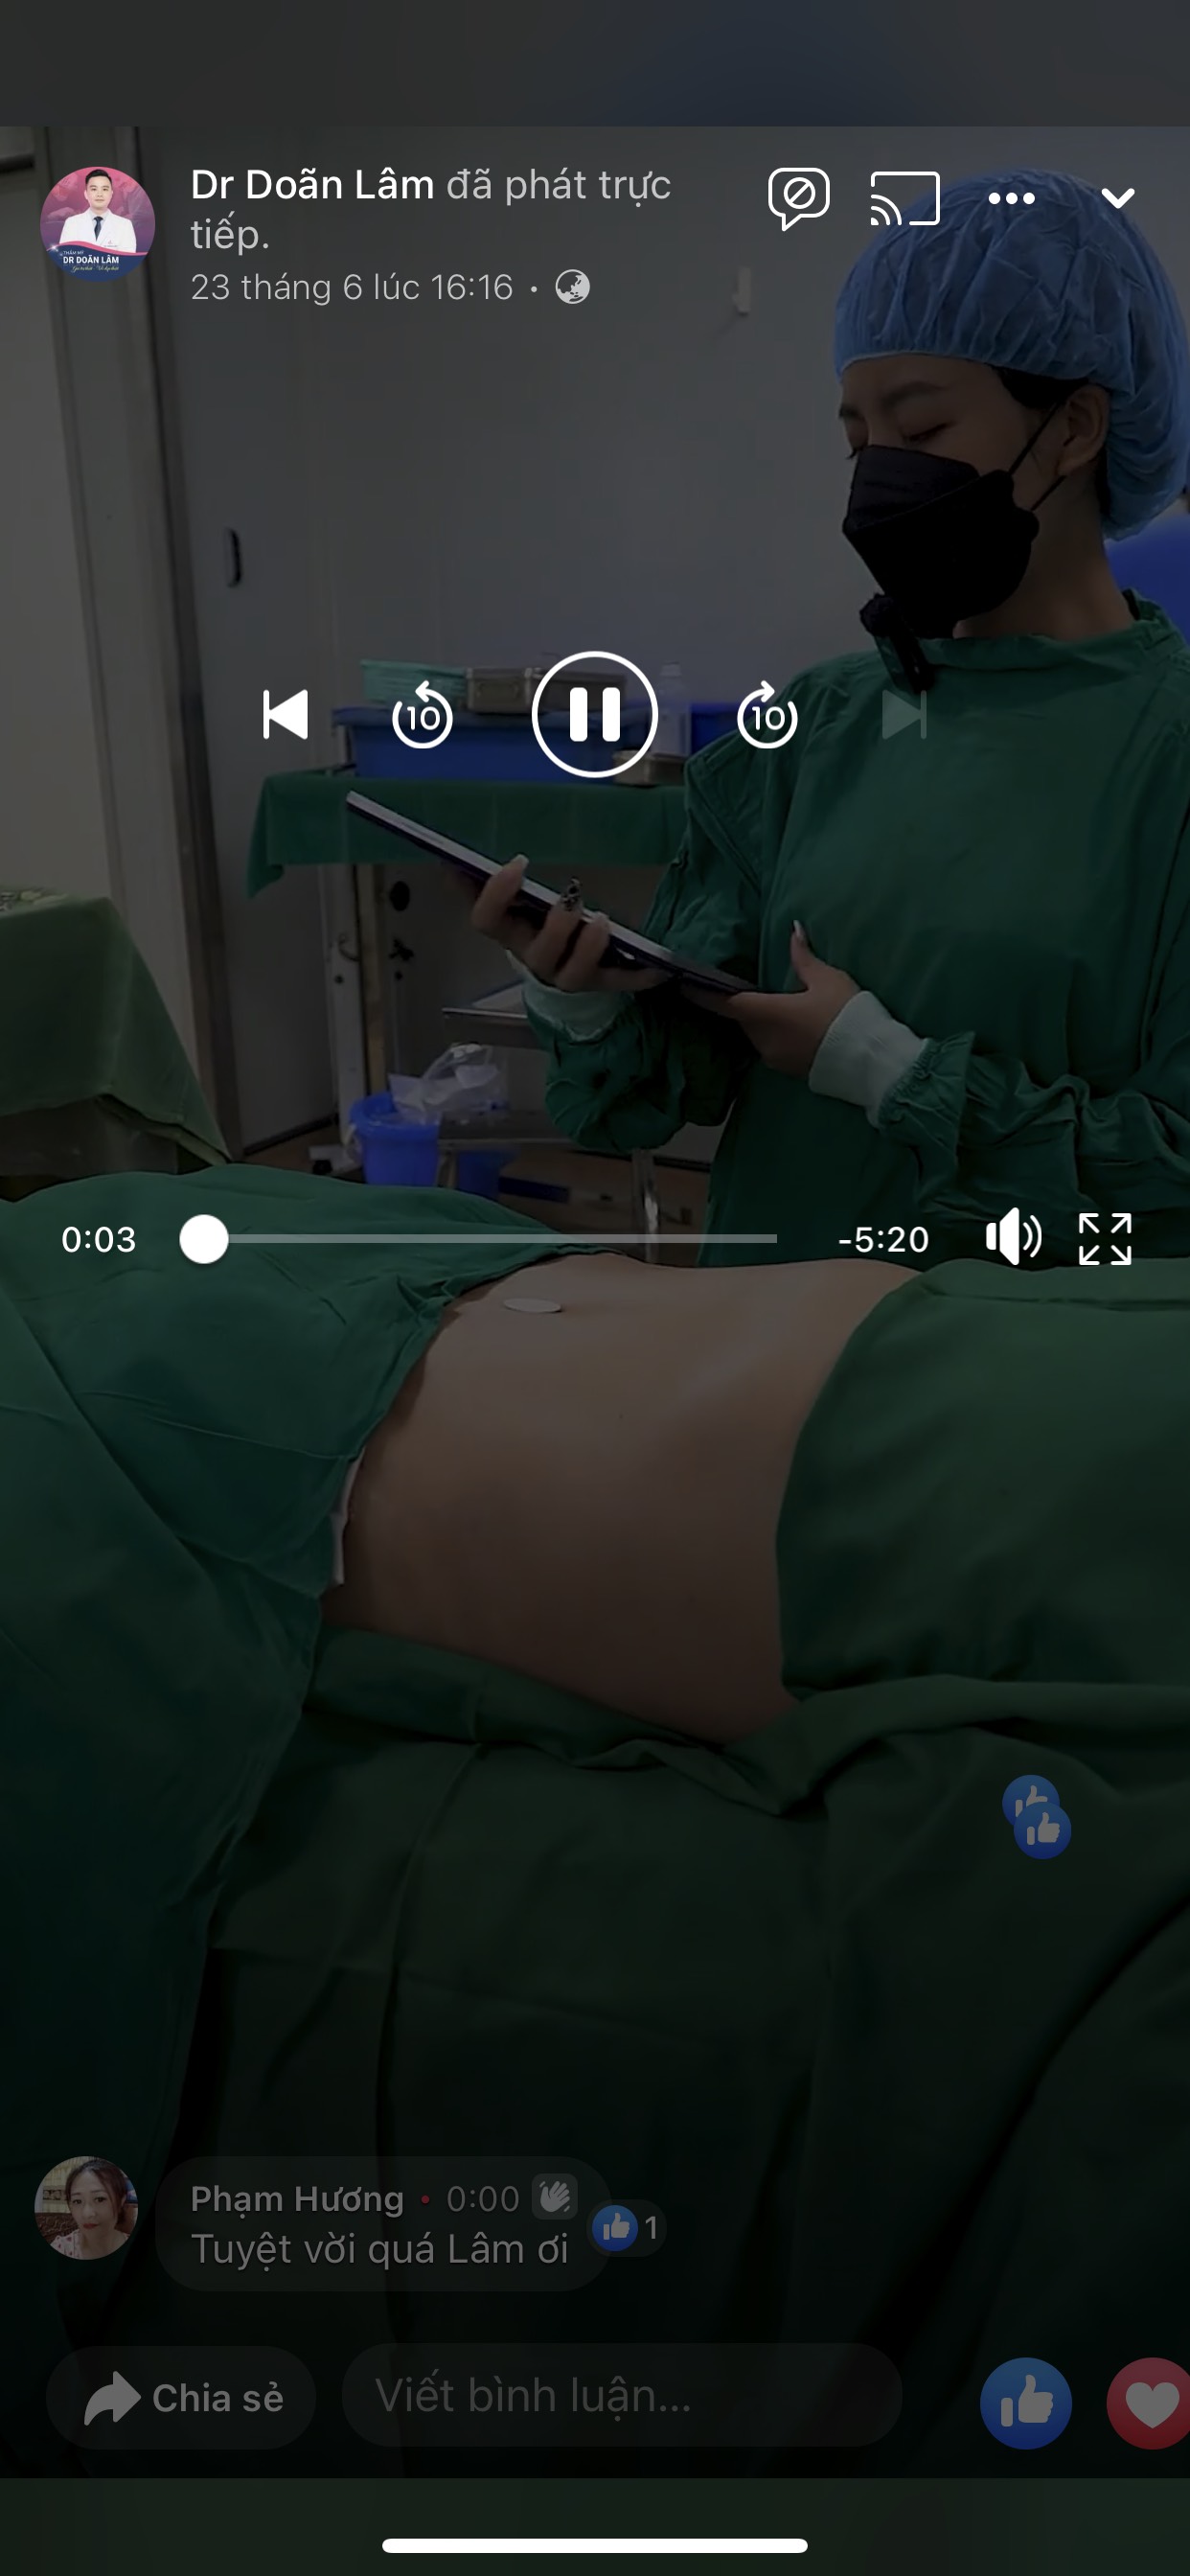 Trang Dr Doãn Lâm phát trực tiếp một ca hút mỡ tạo hình bụng ( ảnh chụp màn hình livestream)